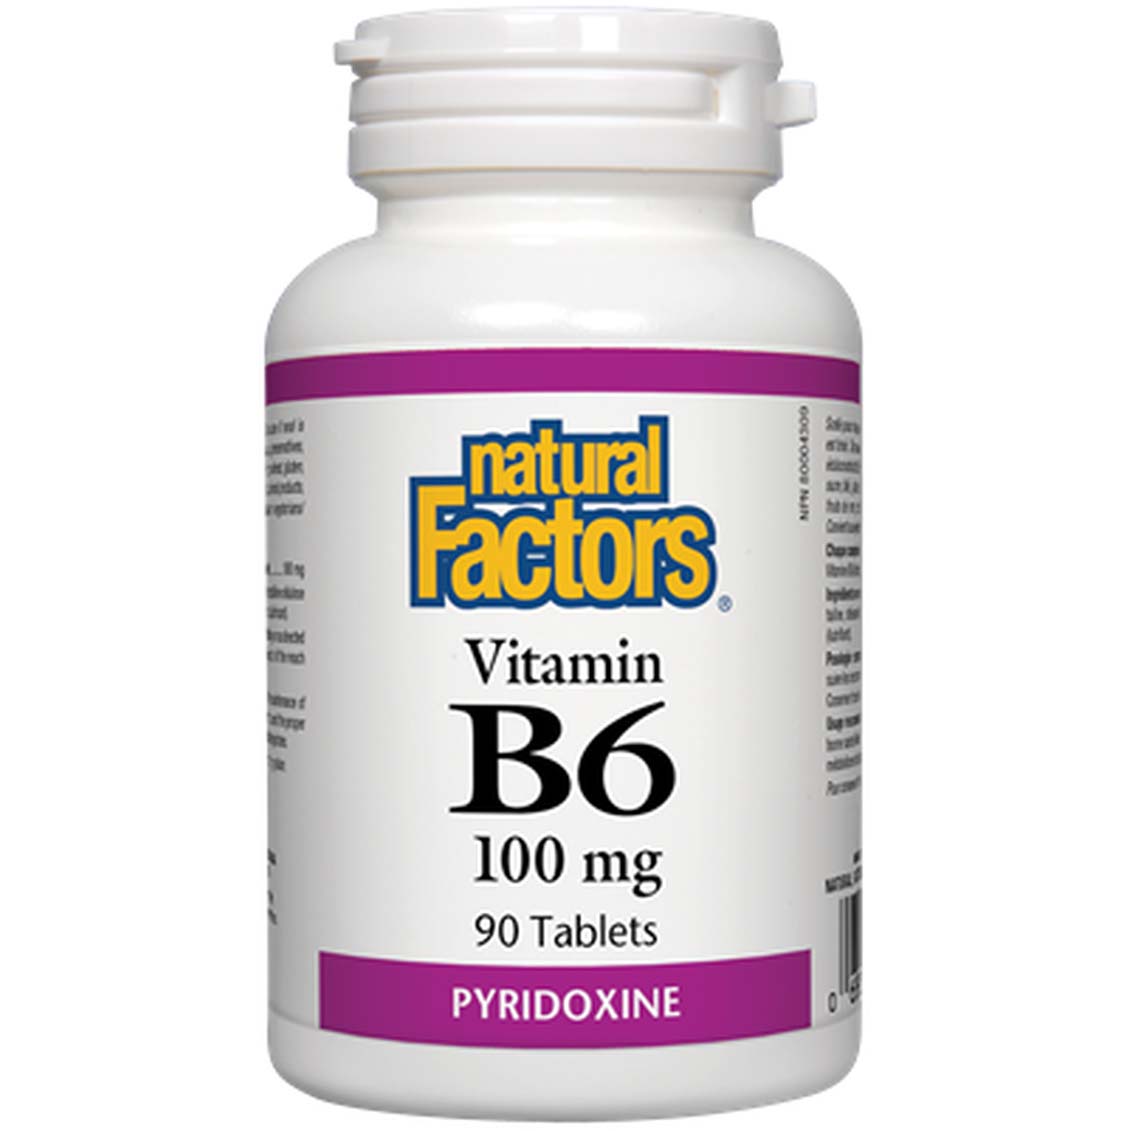 ناتشورال فاكتورز فيتامين ب 6 بيريدوكسين, 100 ملجم, 90 حبة